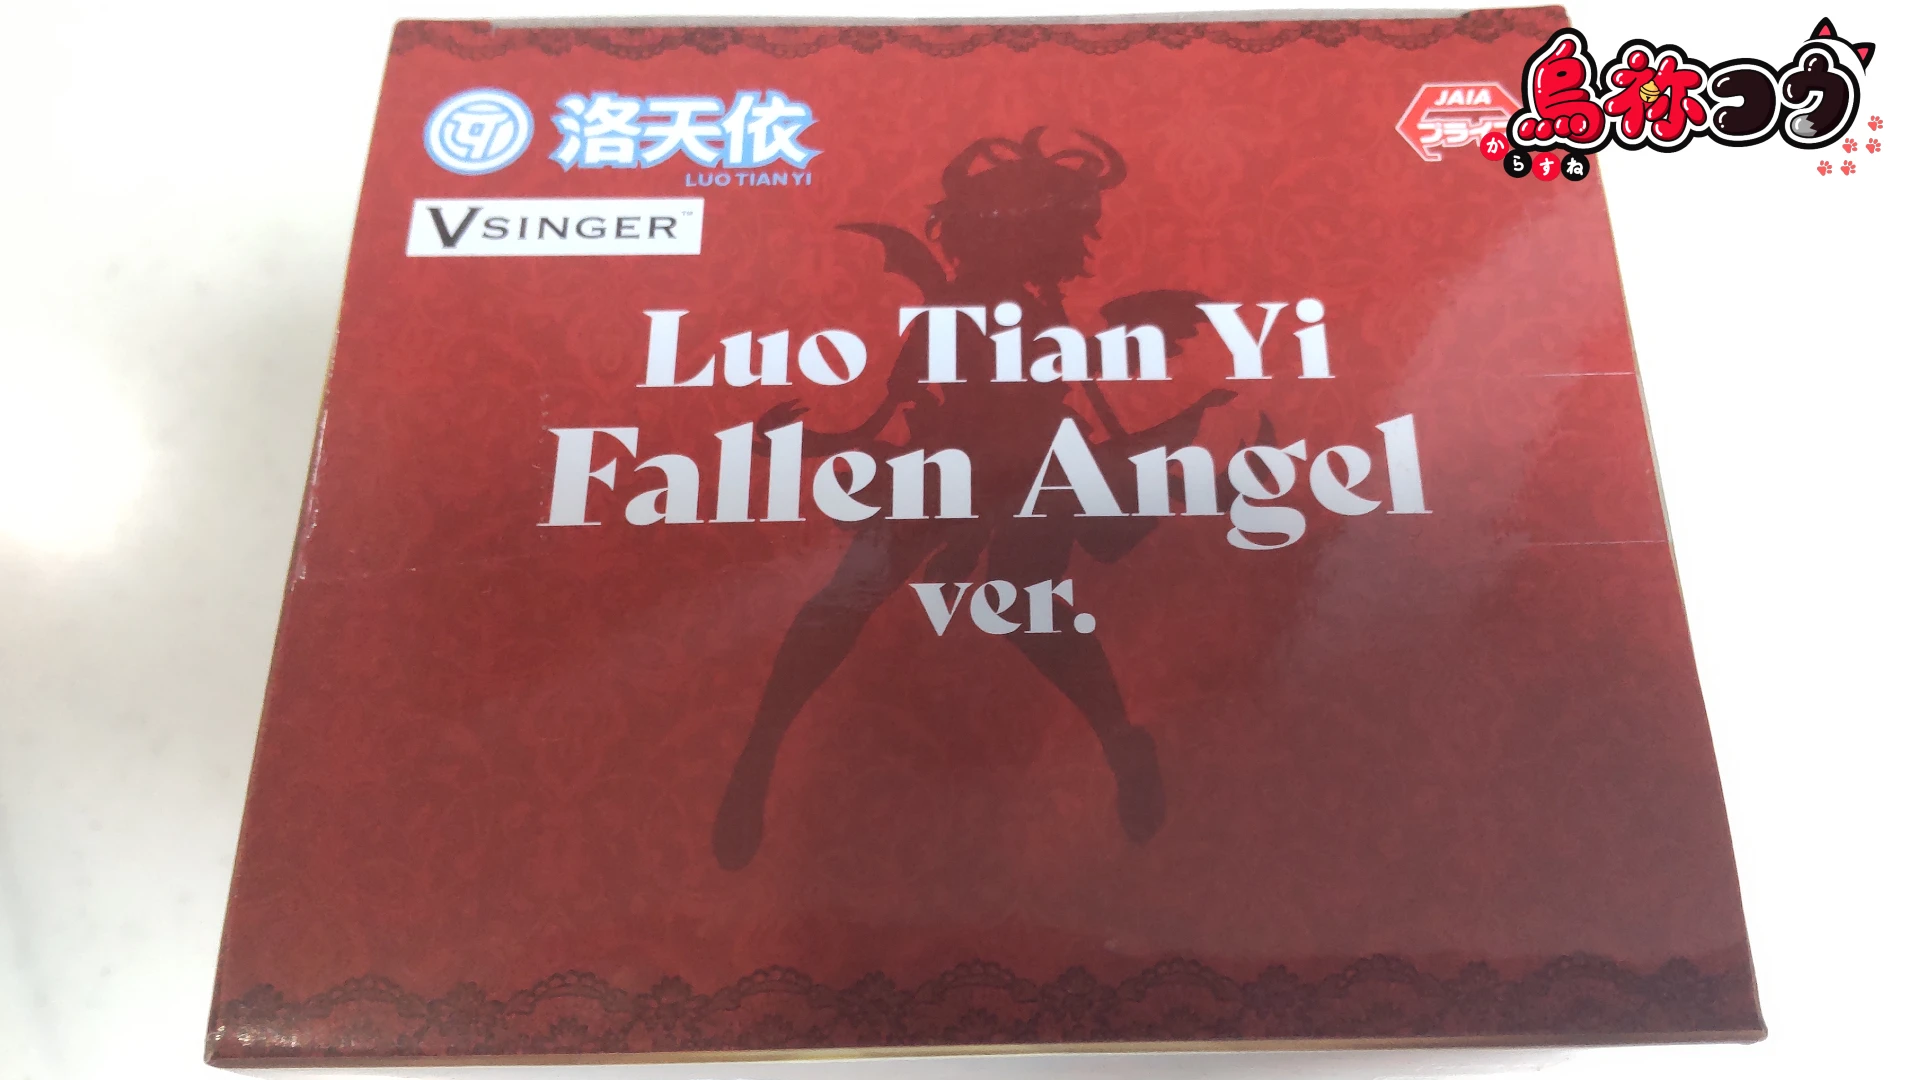 ぬーどるストッパーフィギュアの洛天依（ルォ・テンイ）Fallen Angel ver. のパッケージの天面です